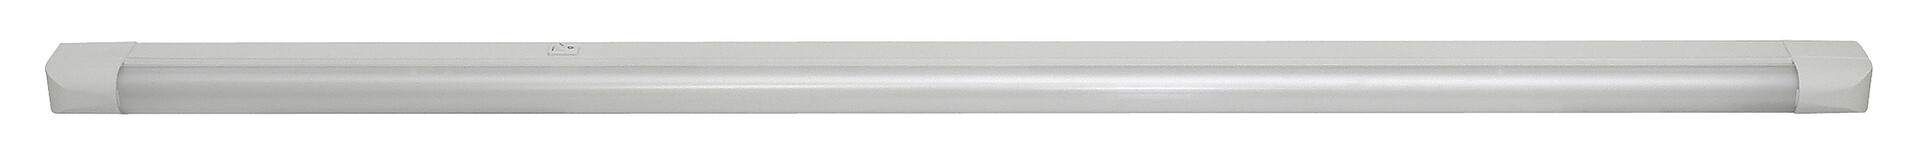 Arbeitsleuchte Band light 2305, G13, 36W, 2700K, 3350lm, Metall, weiß, warmweiß, 128cm